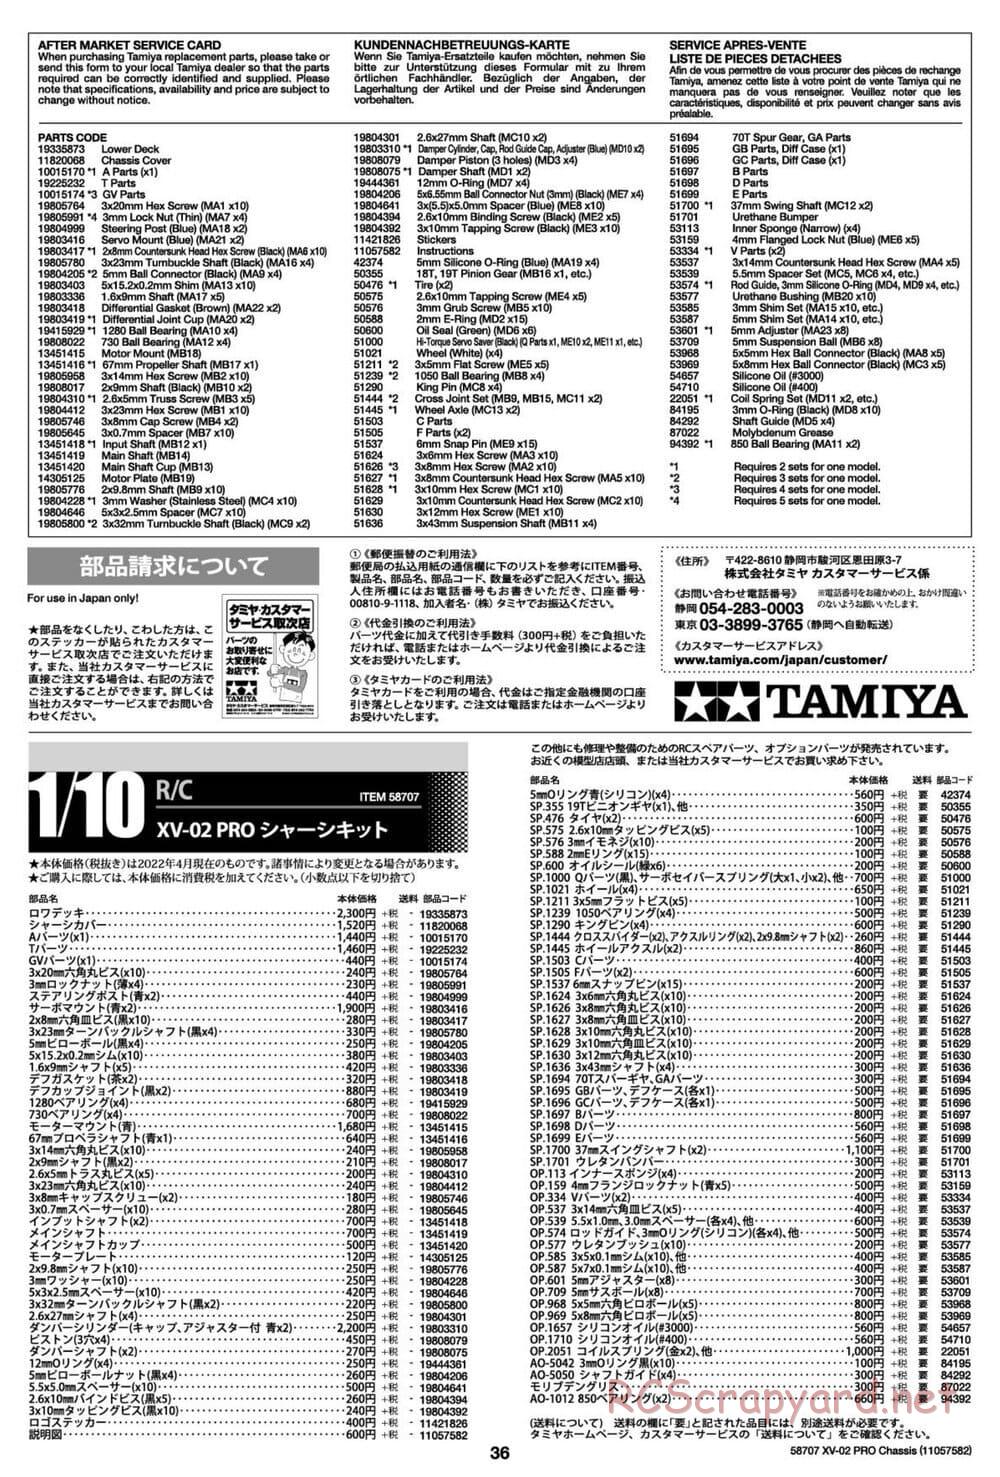 Tamiya - XV-02 Pro Chassis - Manual - Page 36